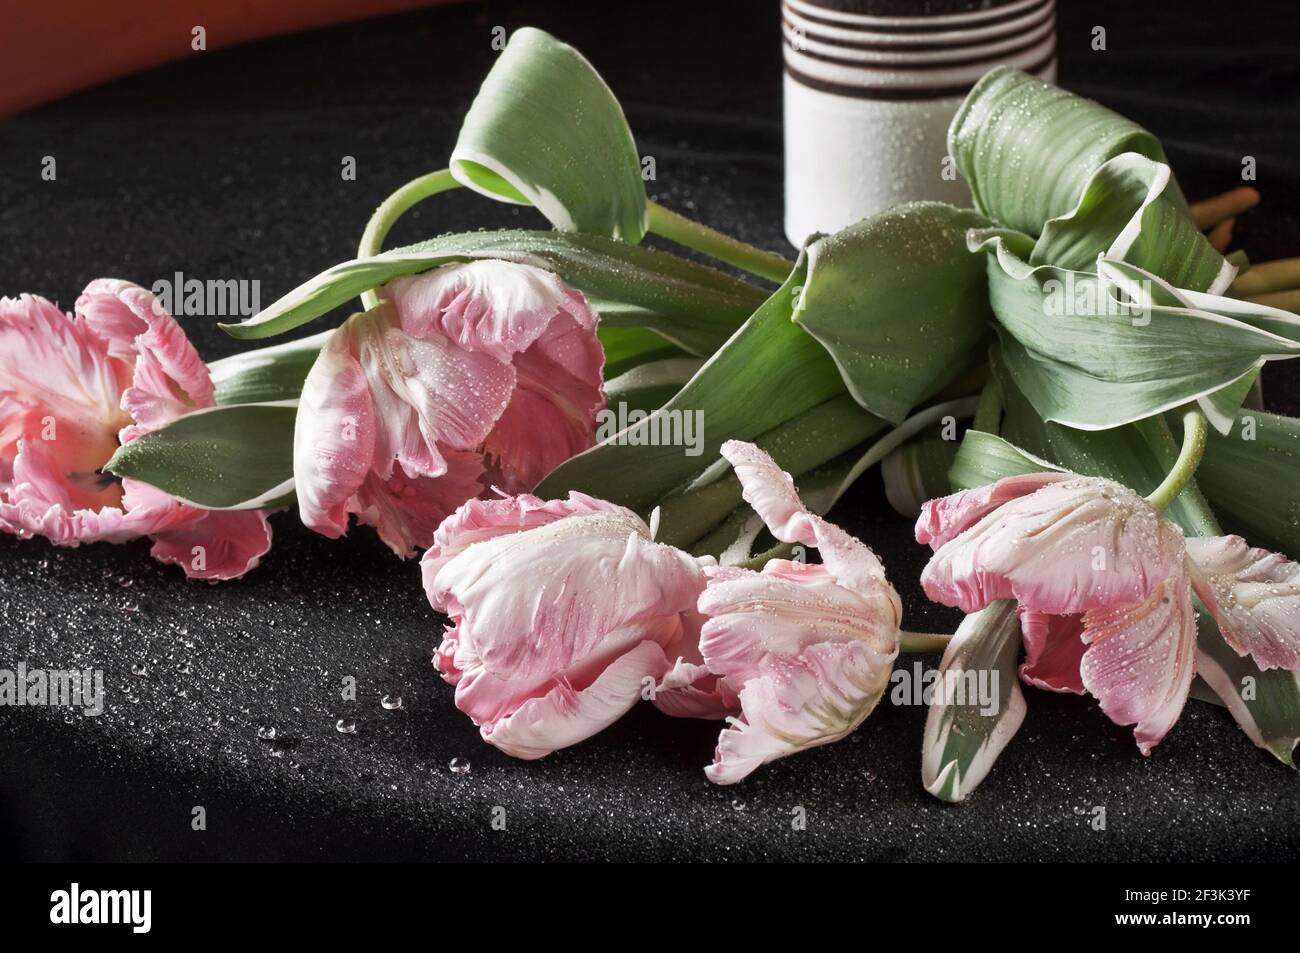 Tulipes roses dezy couchés sur du velours noir avec gouttes d'eau, vase rayé sur fond. Banque D'Images